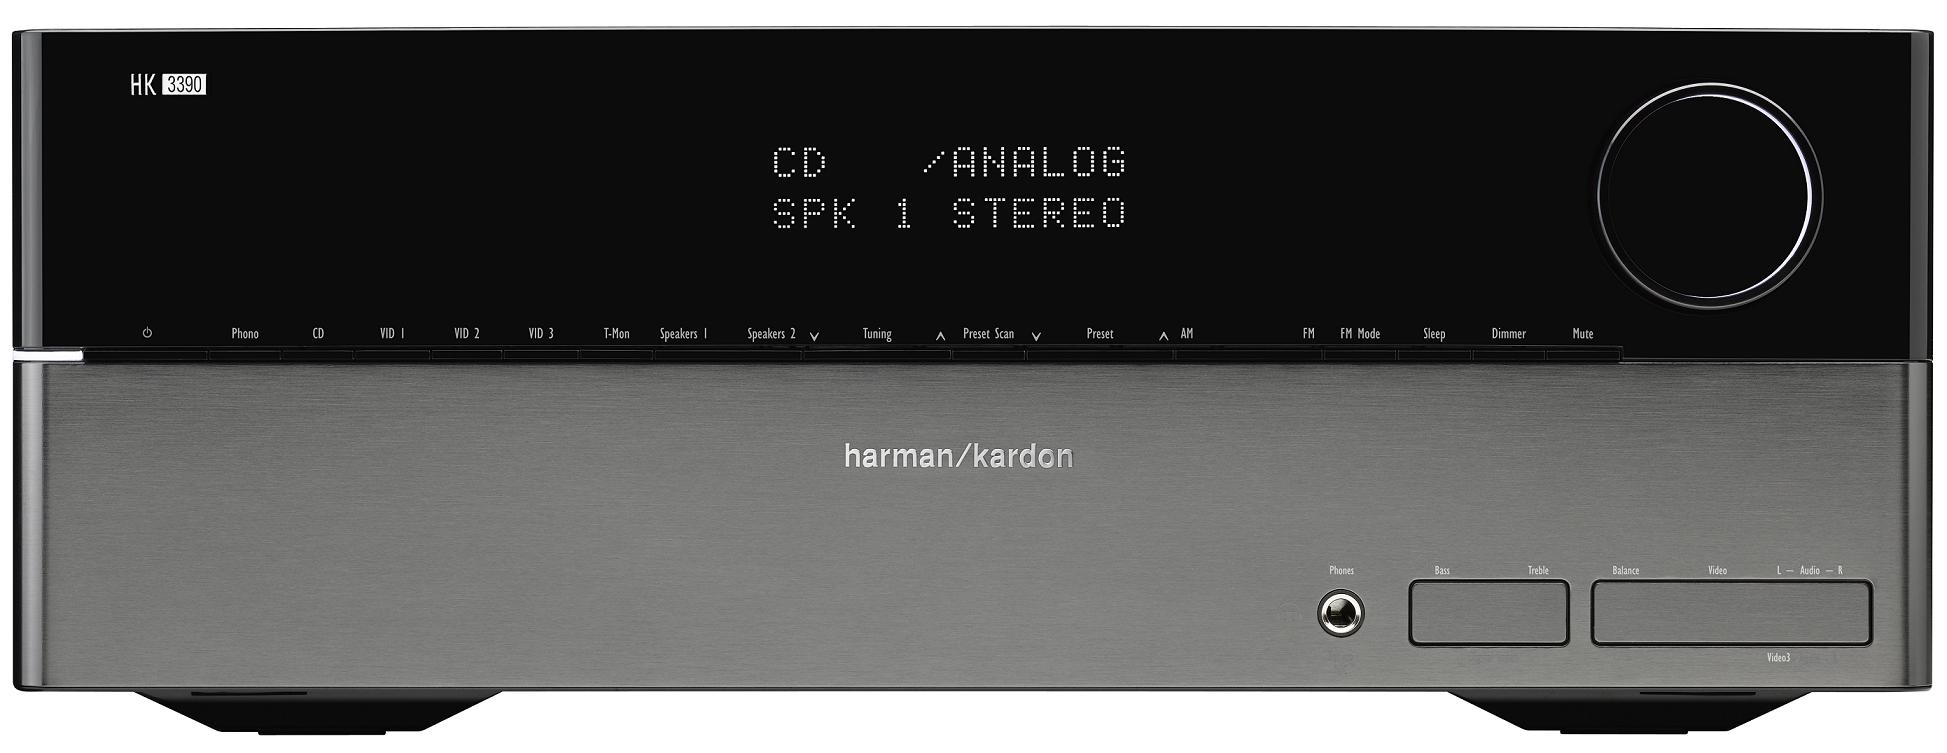 Amplituner Harman Kardon HK 3390